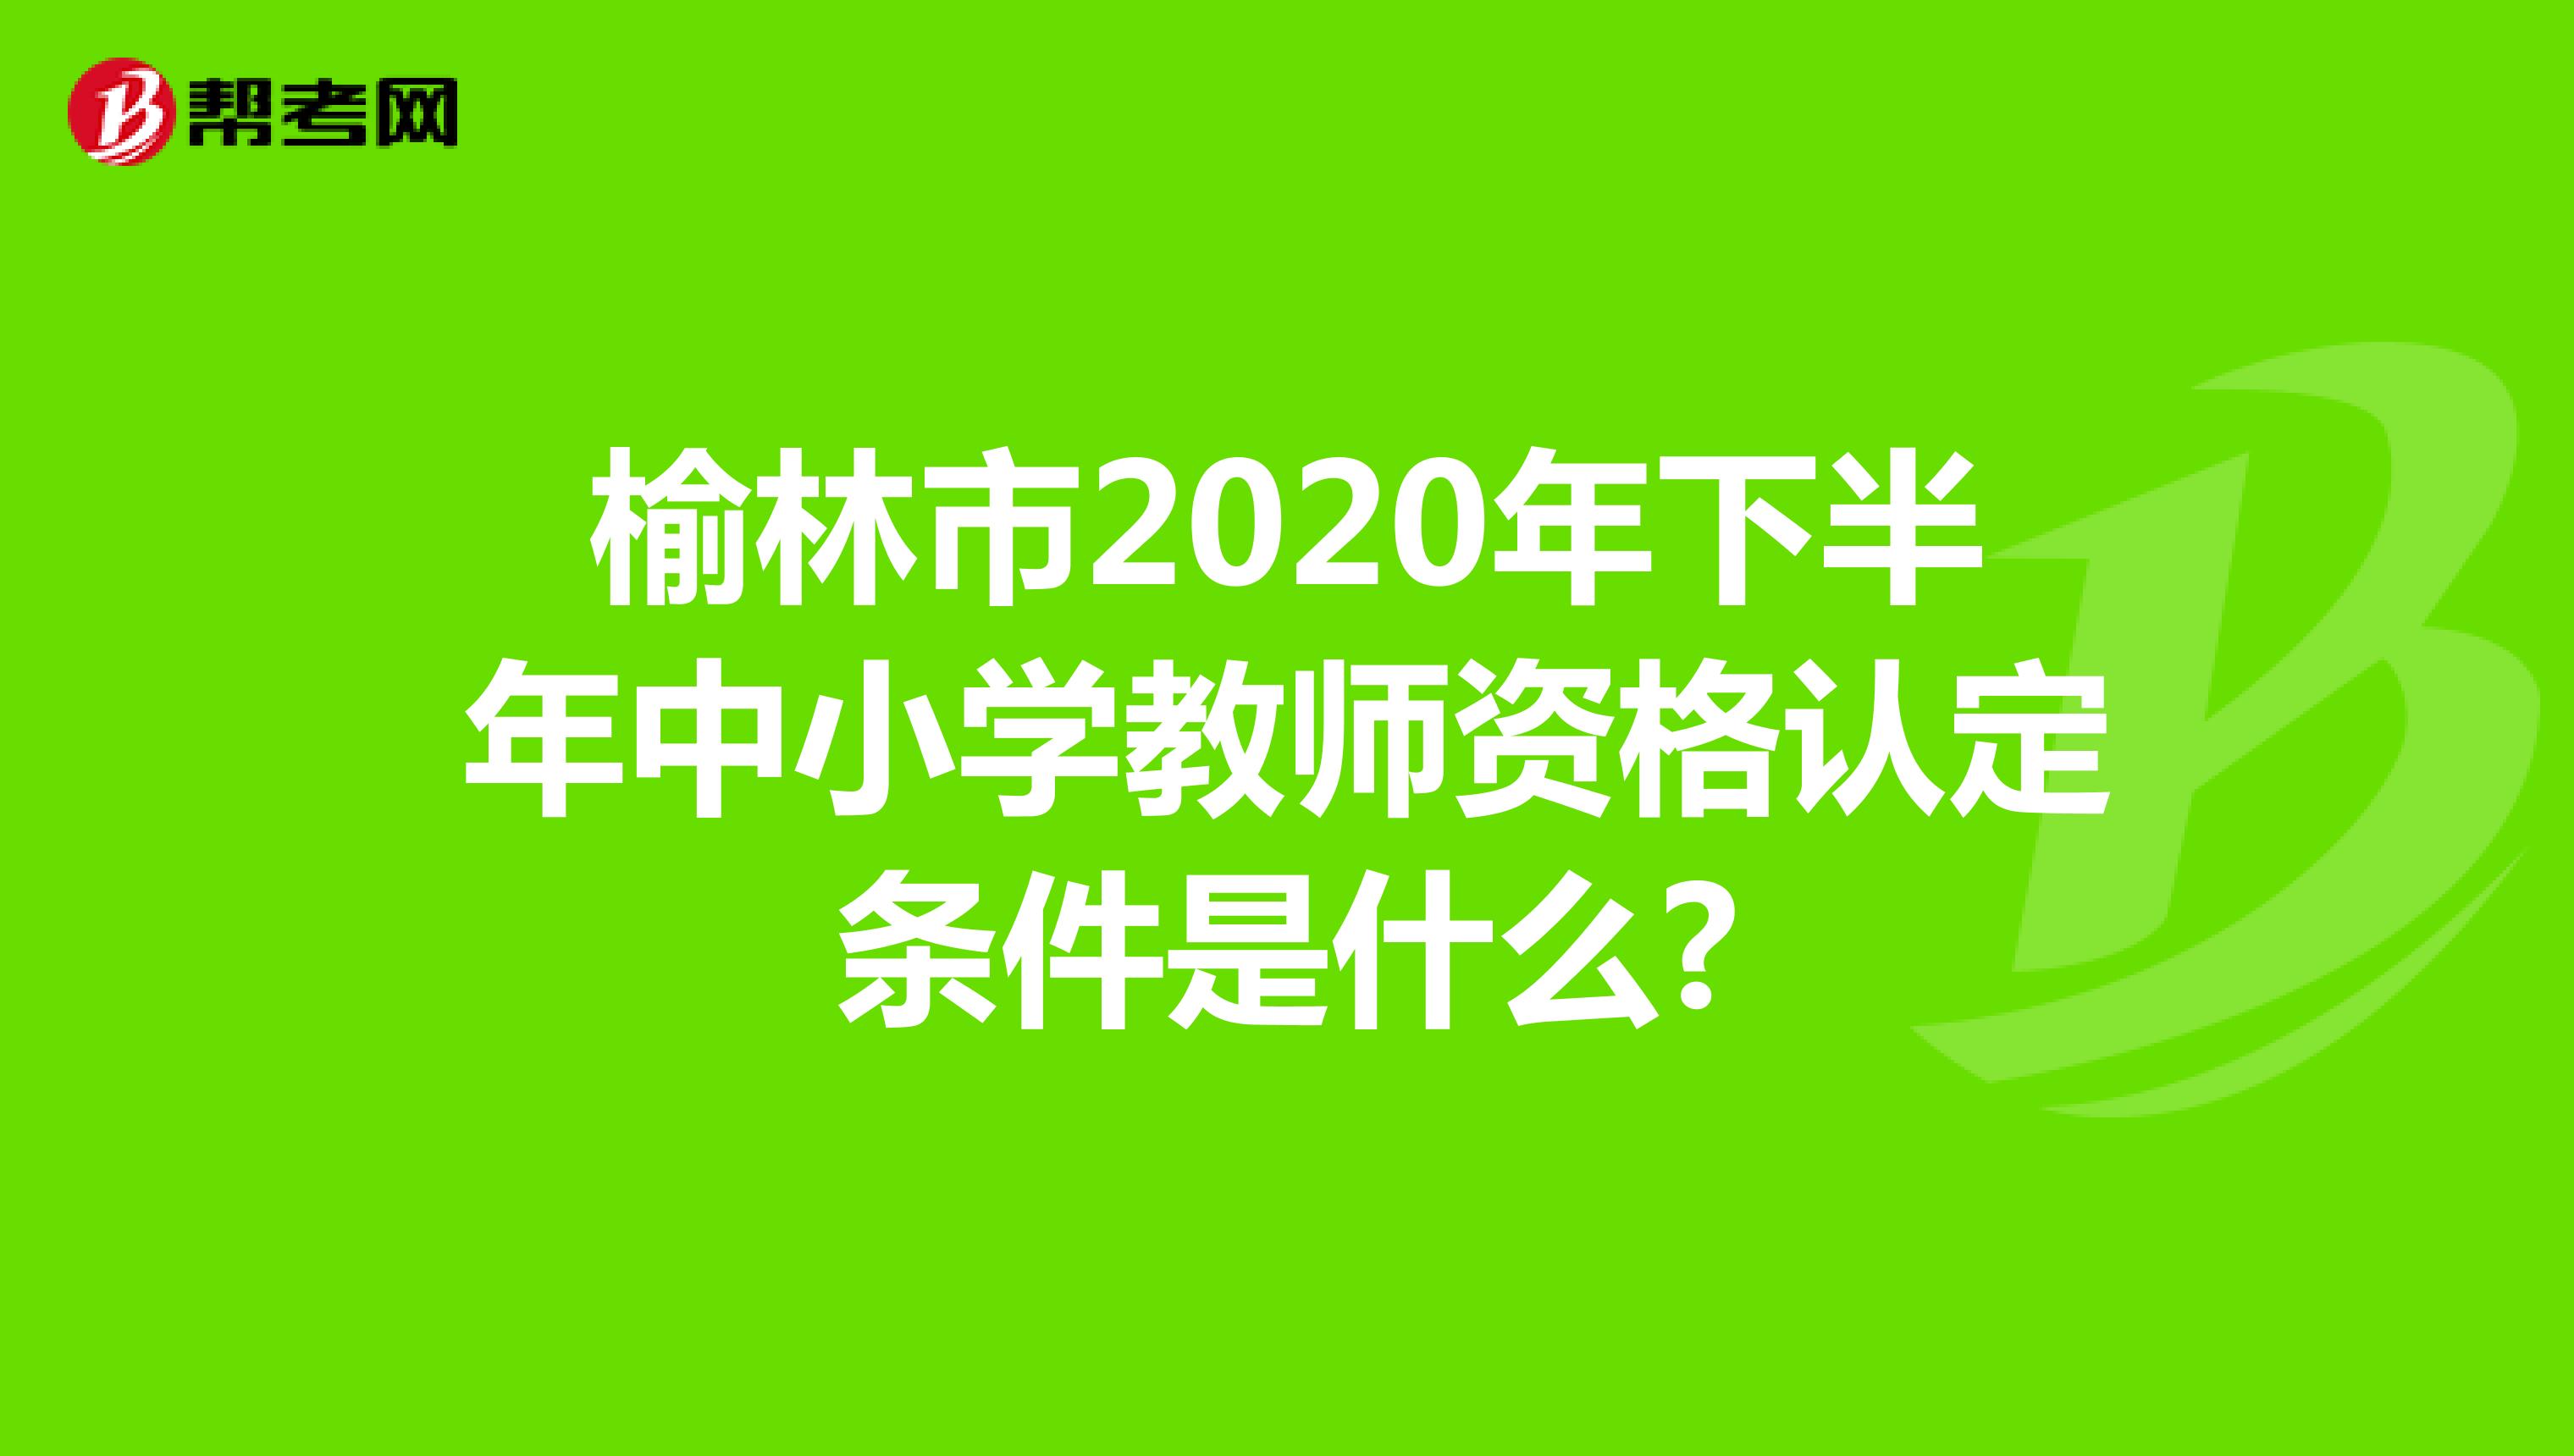 榆林市2020年下半年中小学教师资格认定条件是什么?